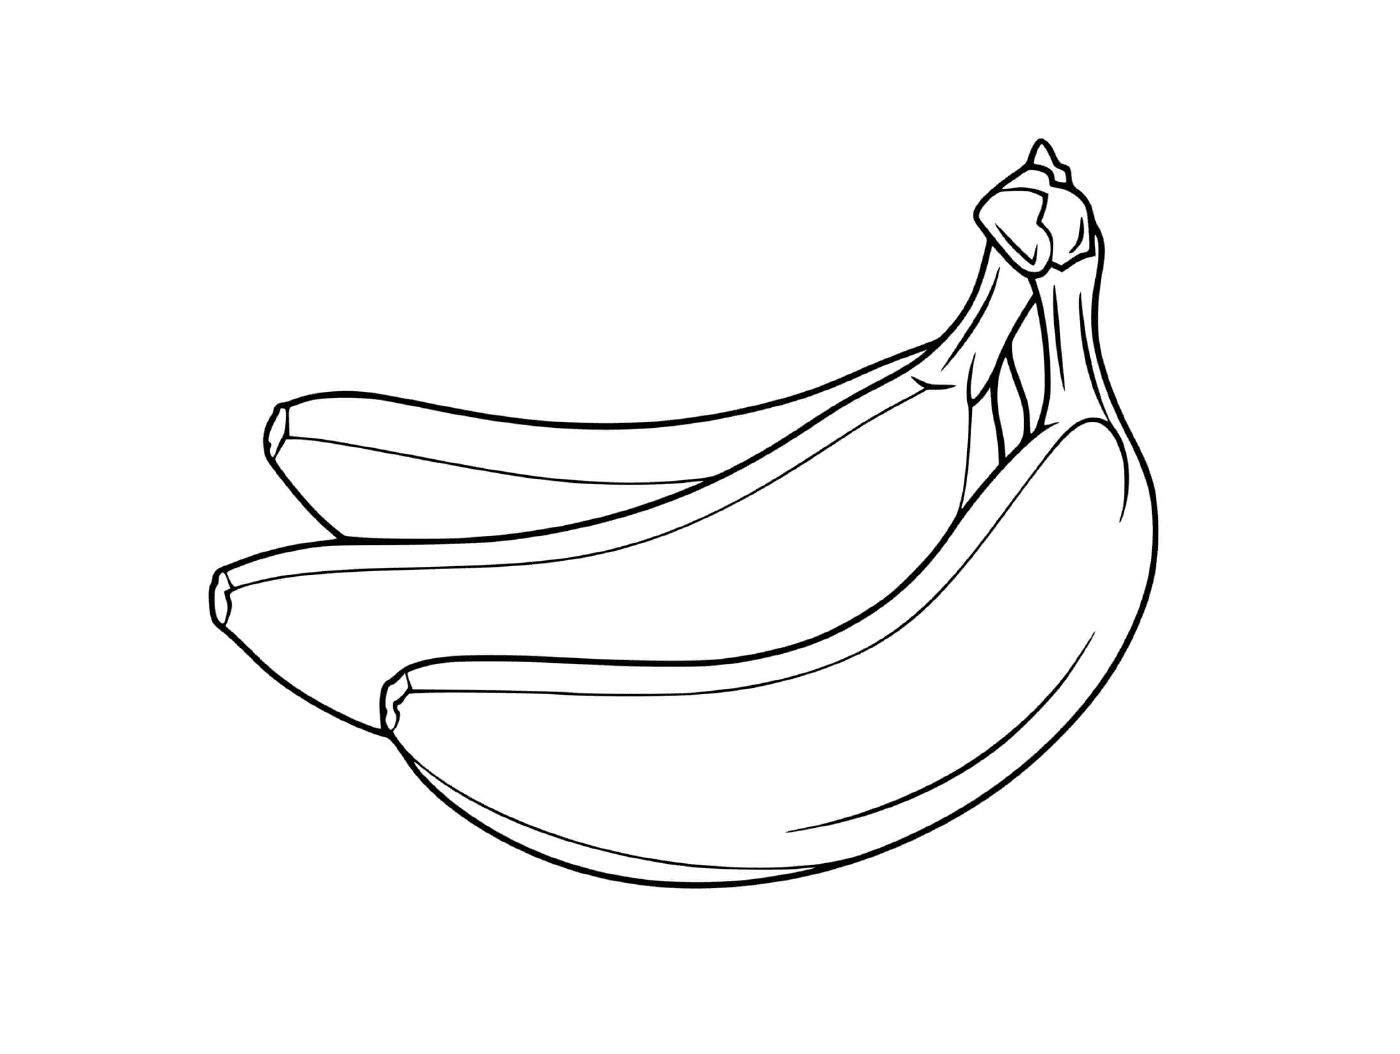  Zwei Bananen auf weißem Hintergrund 